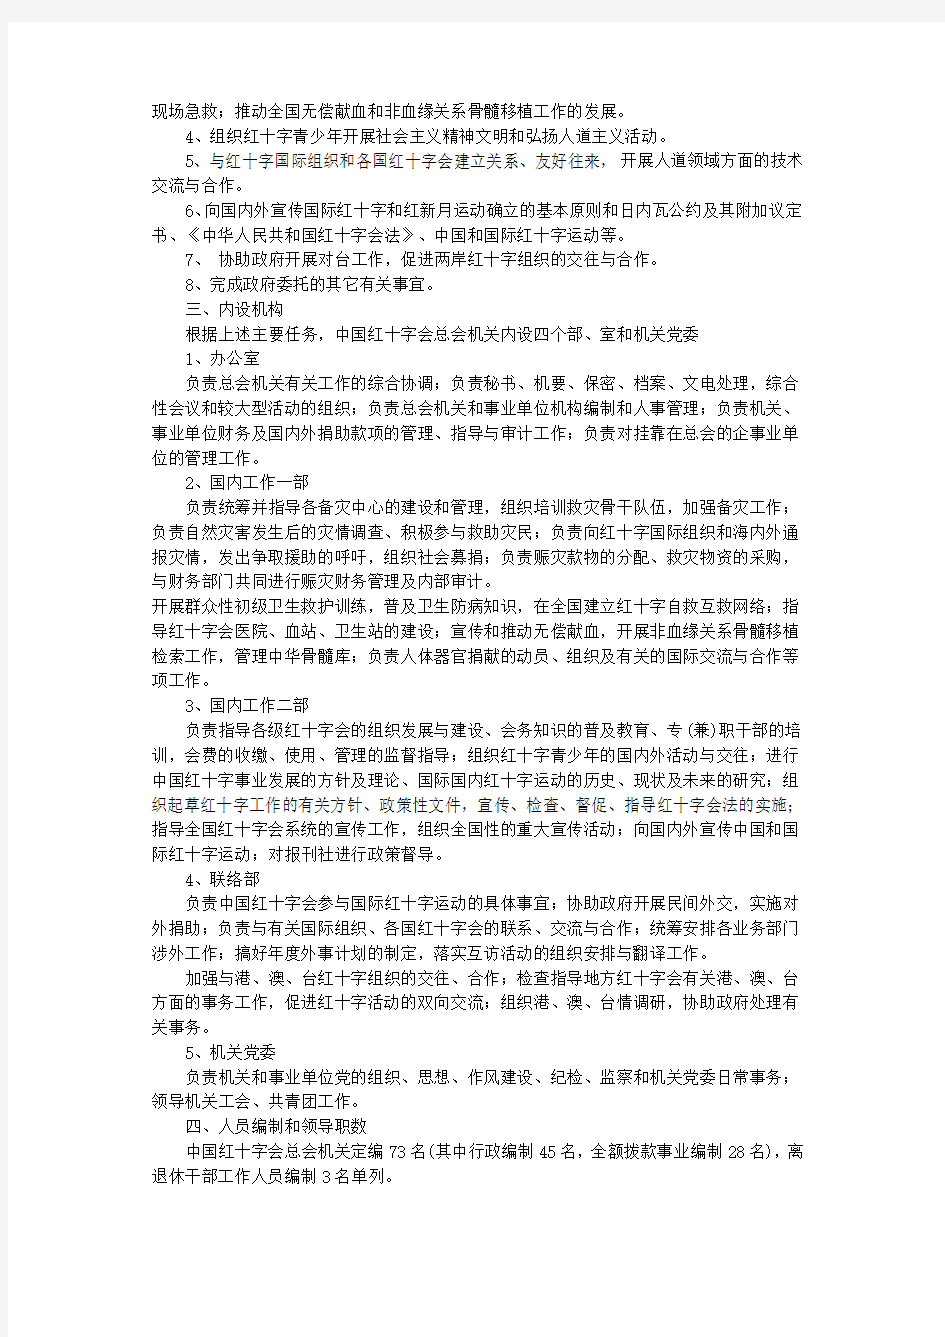 中国红十字会总会机构改革方案